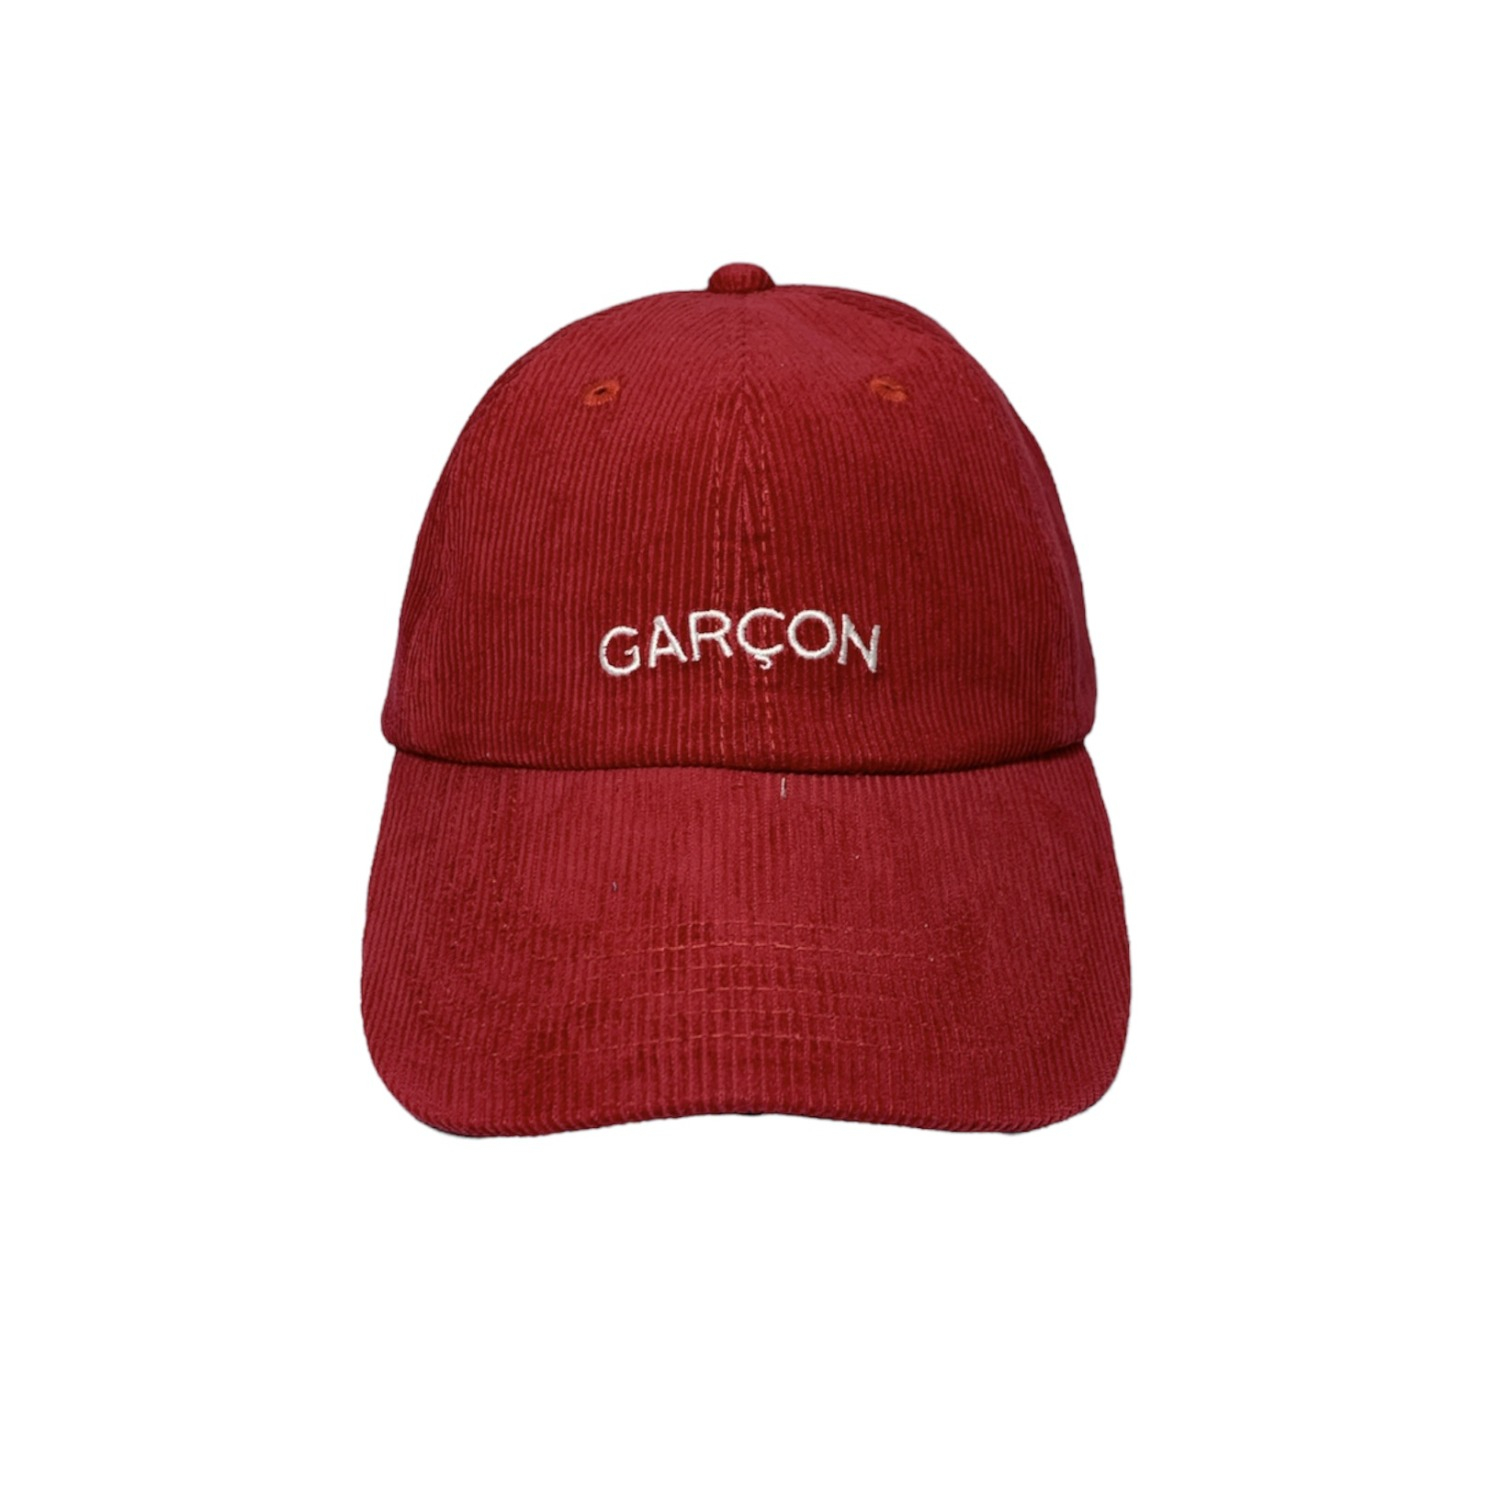 Garcon Cap (Cherry)